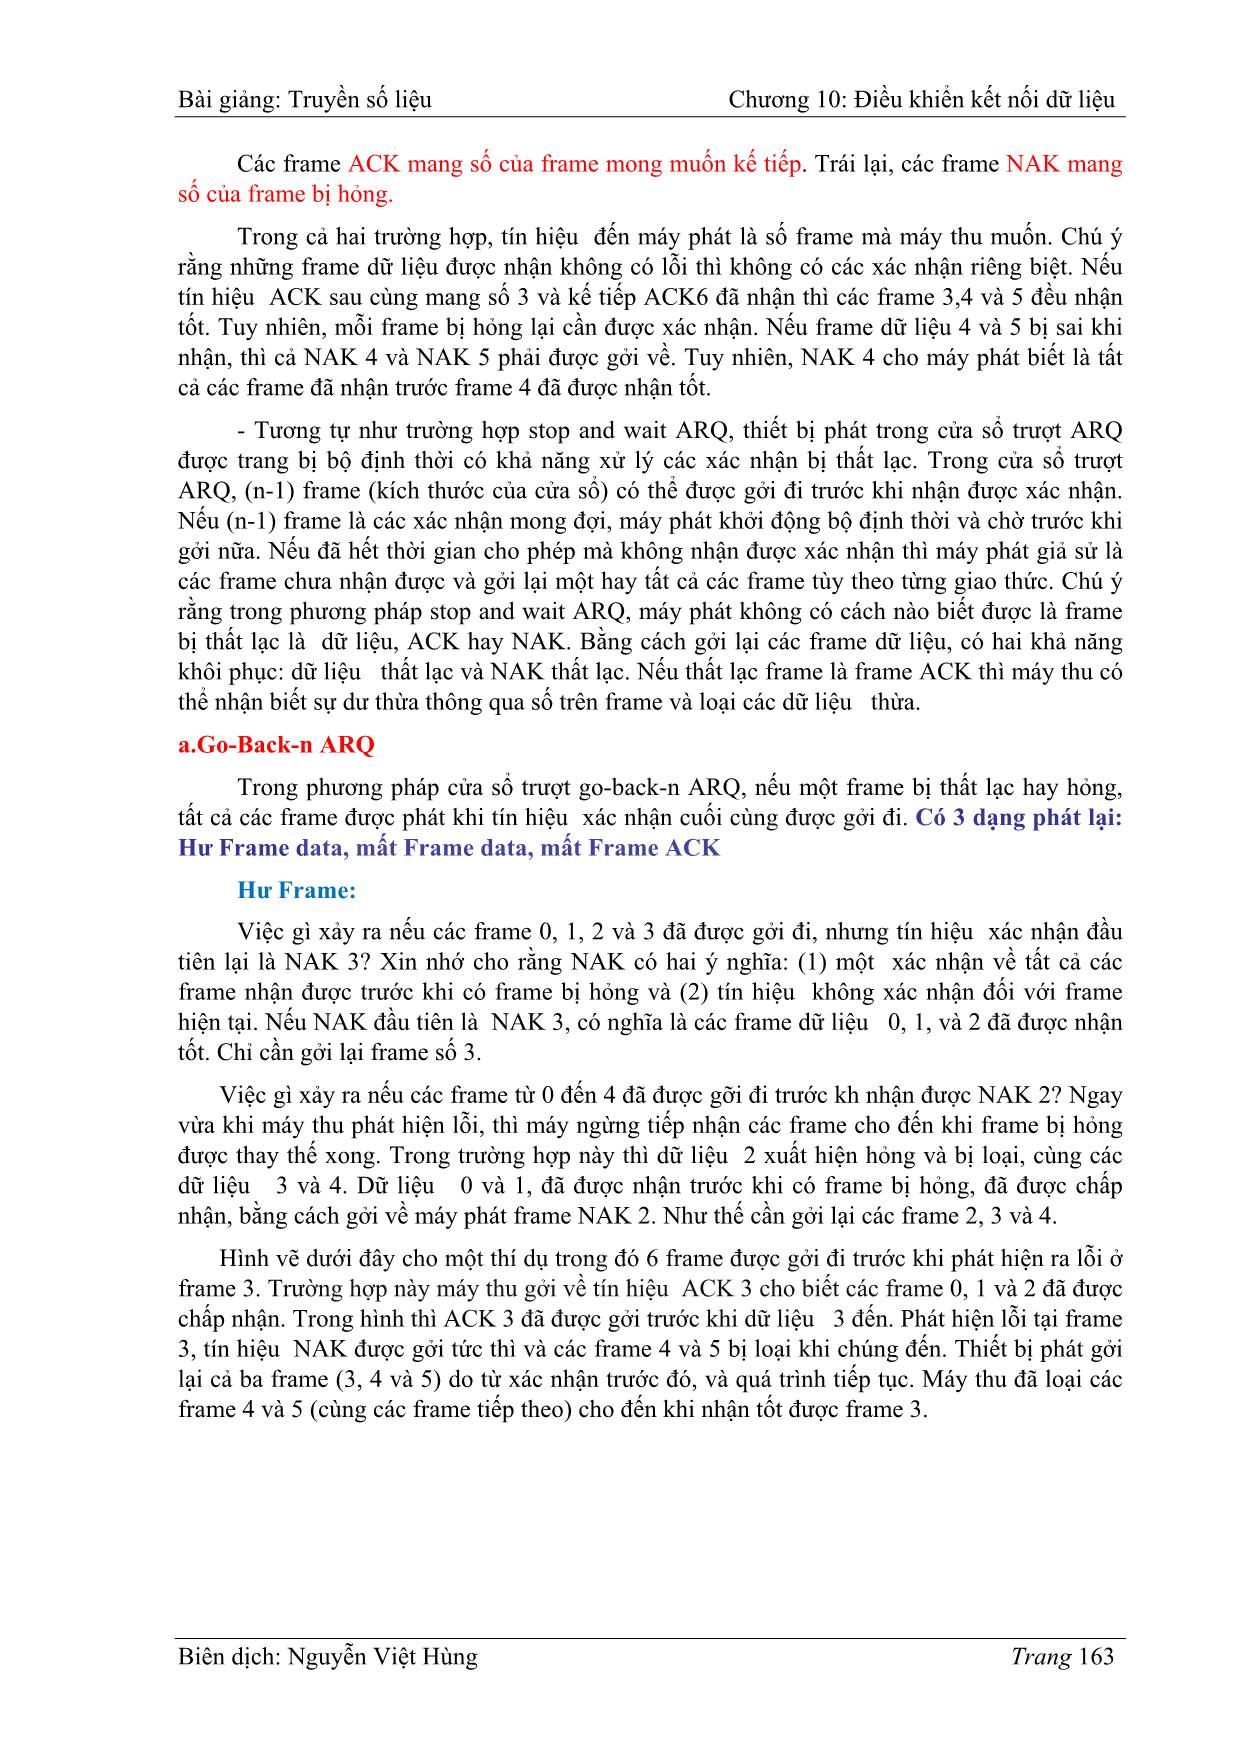 Bài giảng Truyền số liệu - Chương 10: Điều khiển kết nối dữ liệu - Nguyễn Việt Hùng trang 10